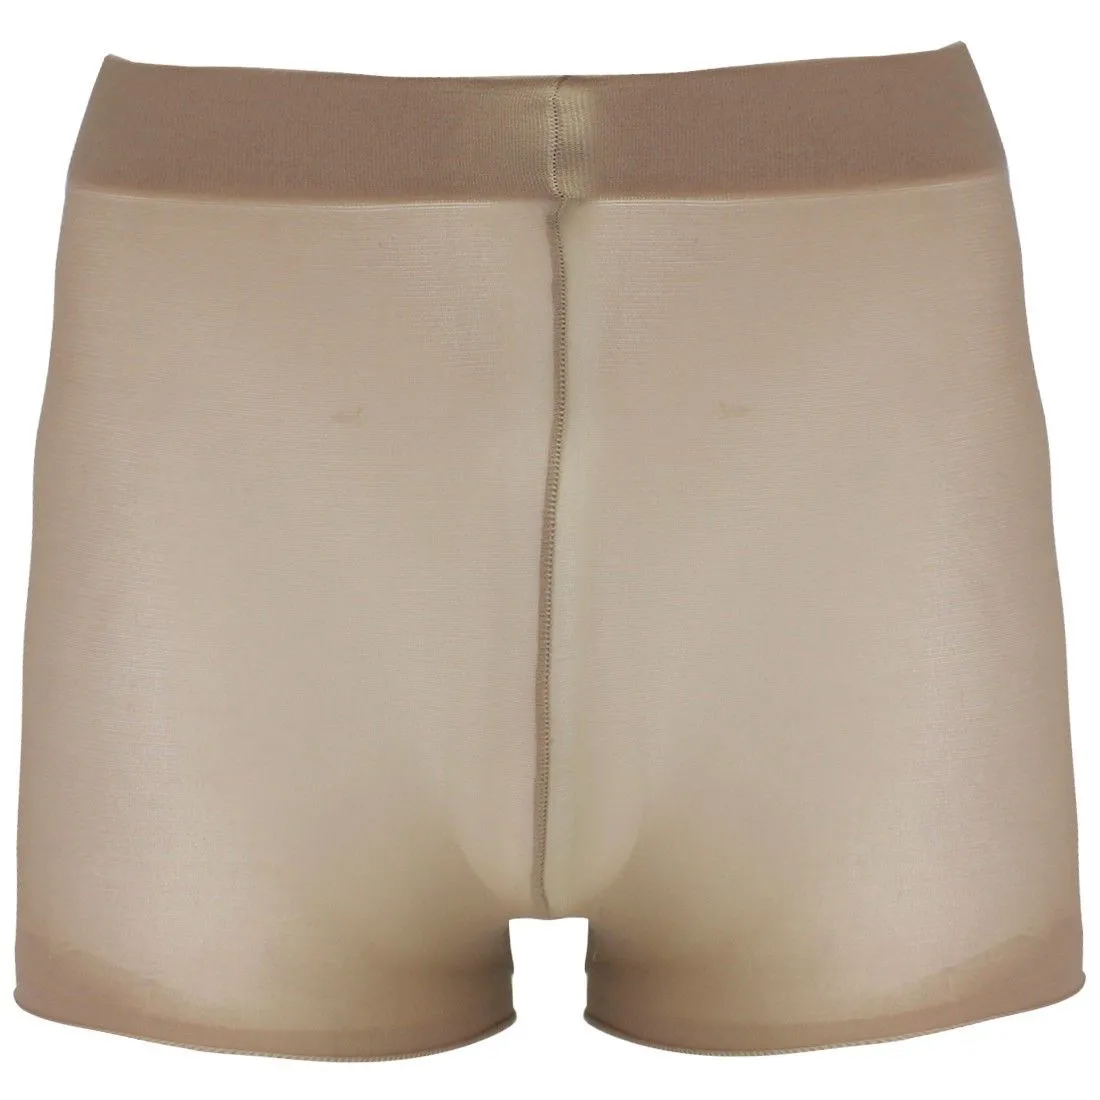 Underpants Men Pantyhose Open Closed Sheath Underwear Stockings